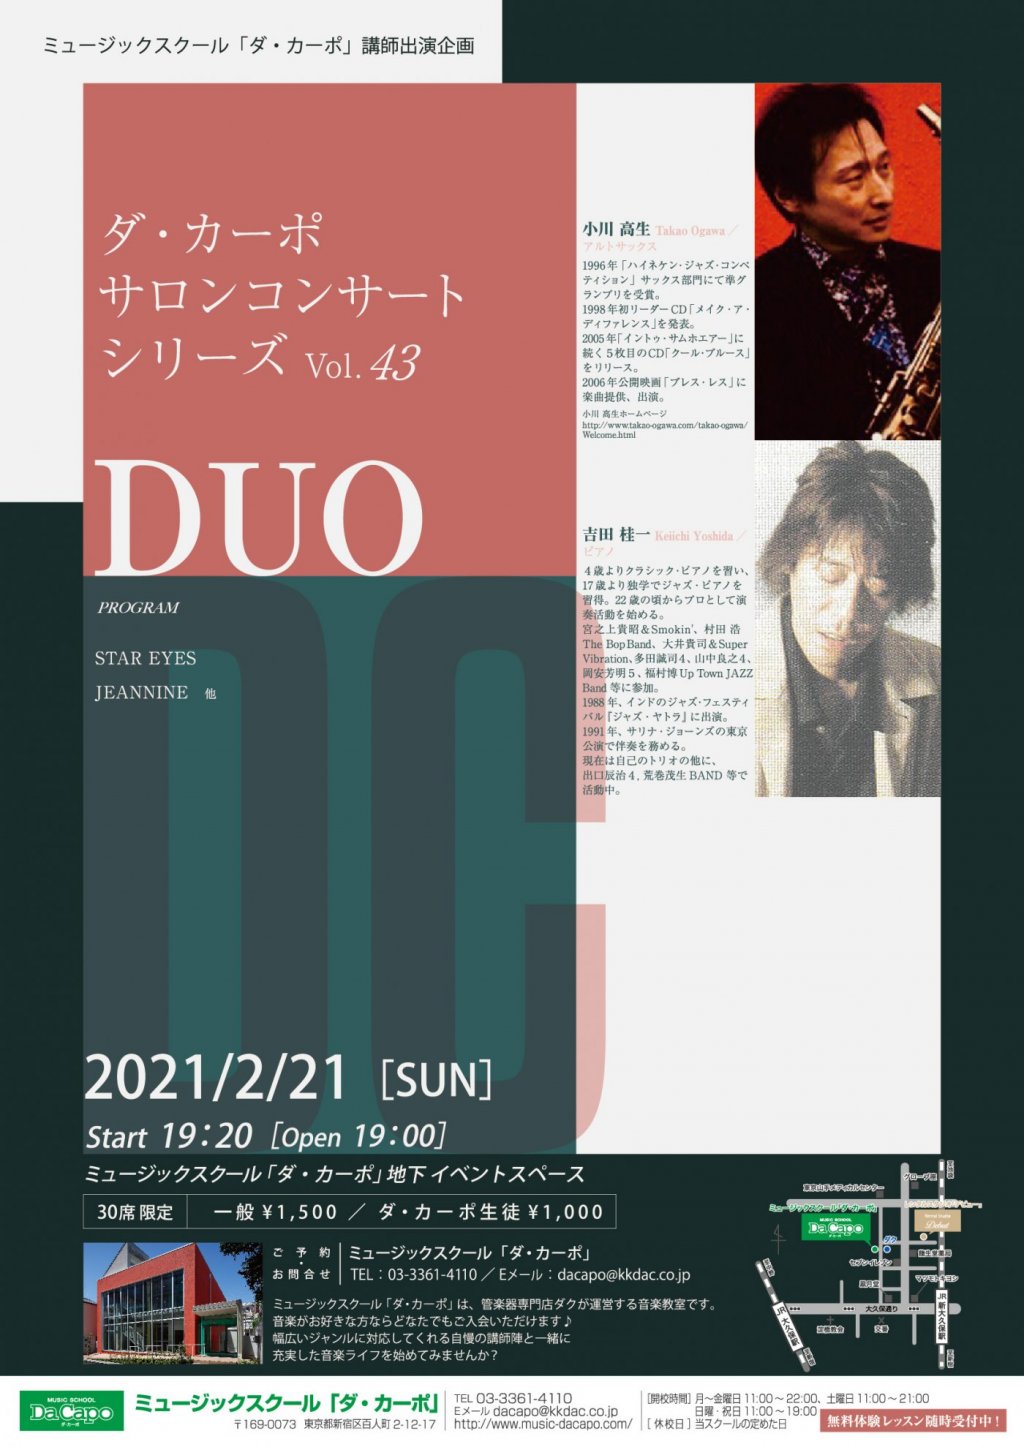 ダ・カーポ サロンコンサートシリーズVol.43「DUO」